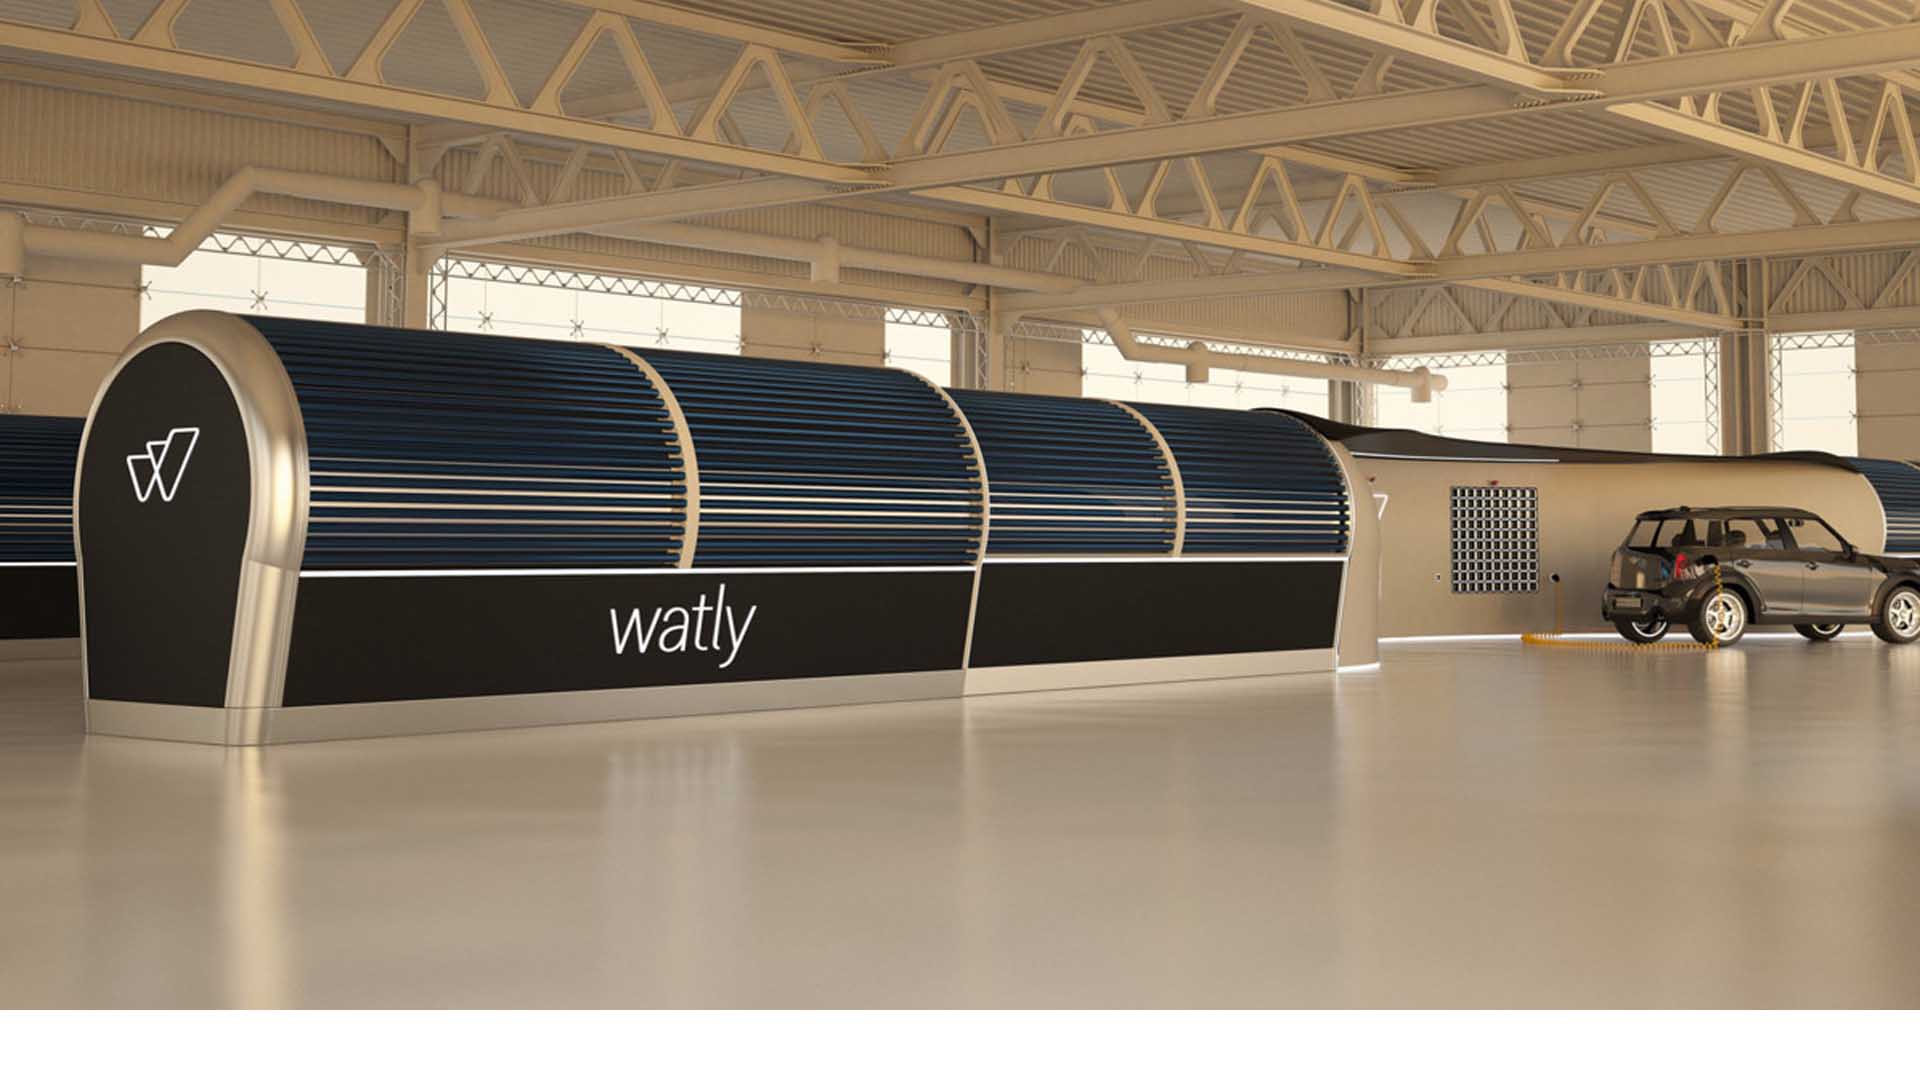 A través de paneles solares, "Watly" proporcionaría electricidad, internet y agua potable